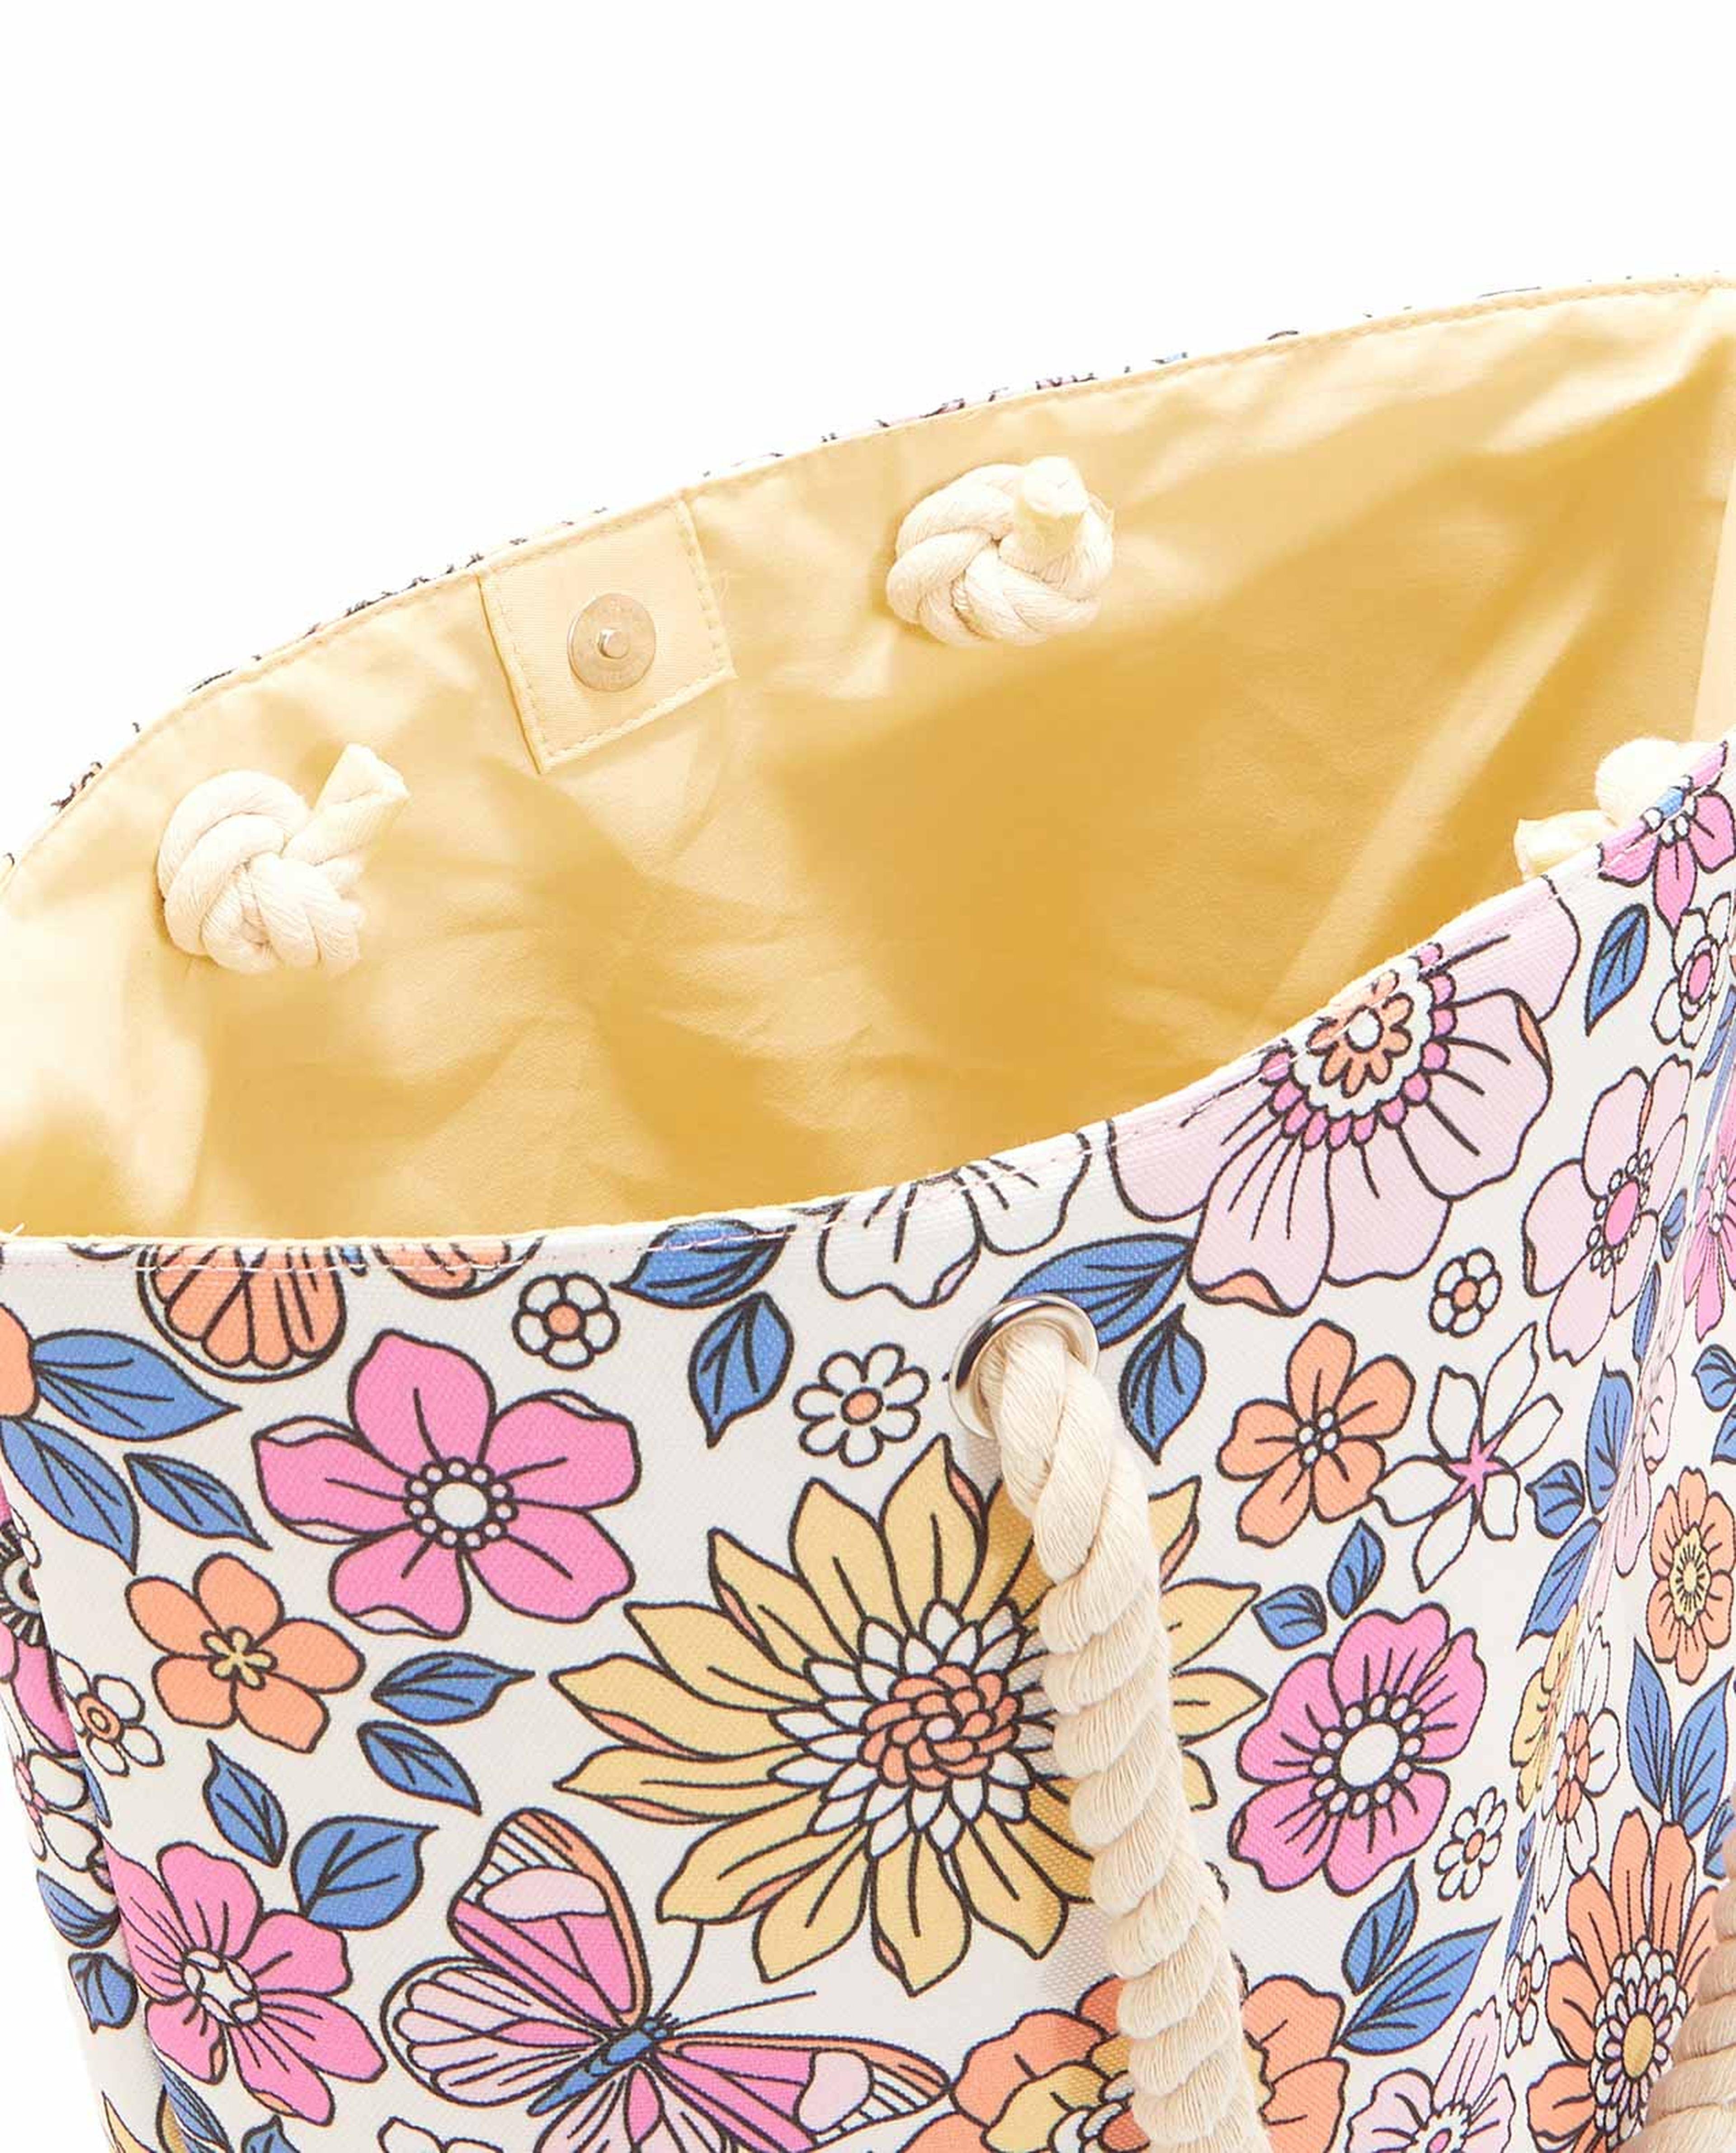 Floral Printed Tote Bag